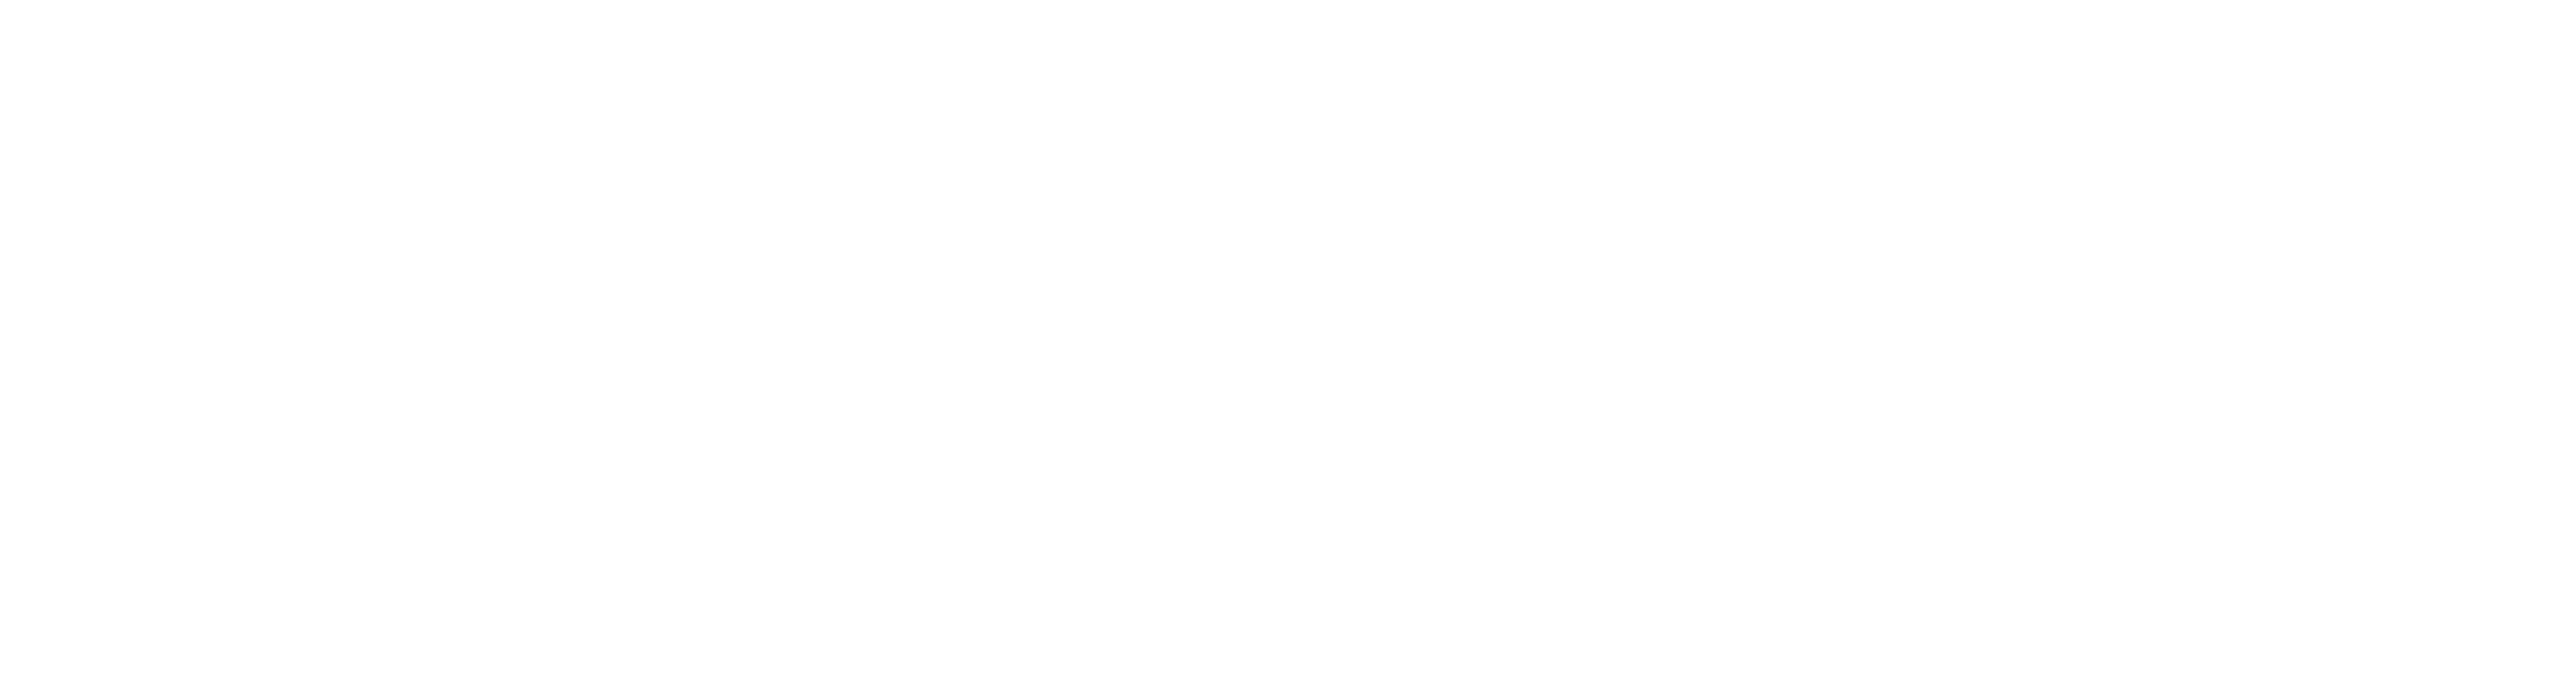 ES_Financiado_por_la_Union_Europea_RGB_WHITE_Outline- Inicio